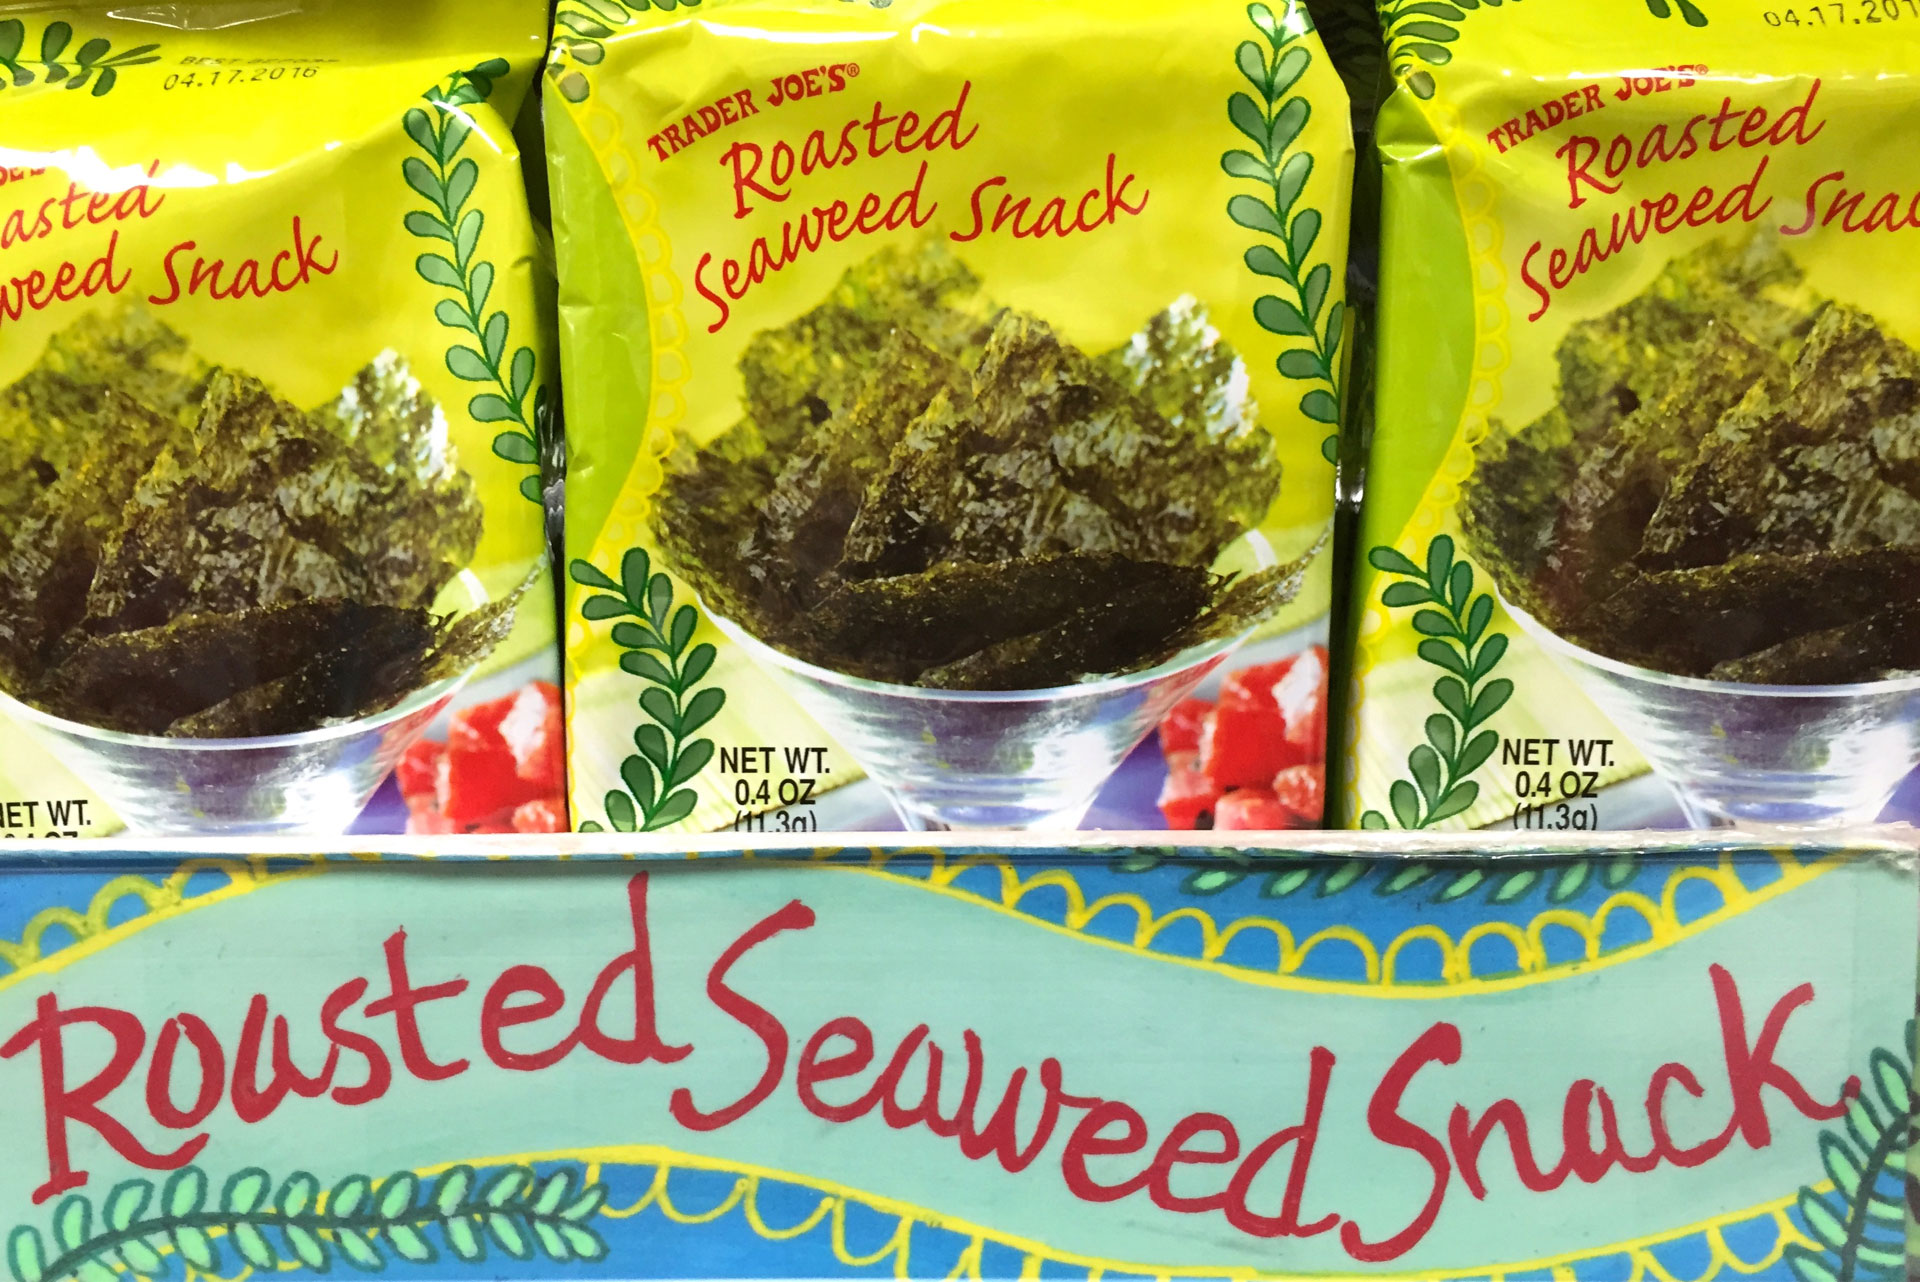 Trade Joe’s popular seaweed snack-packs.